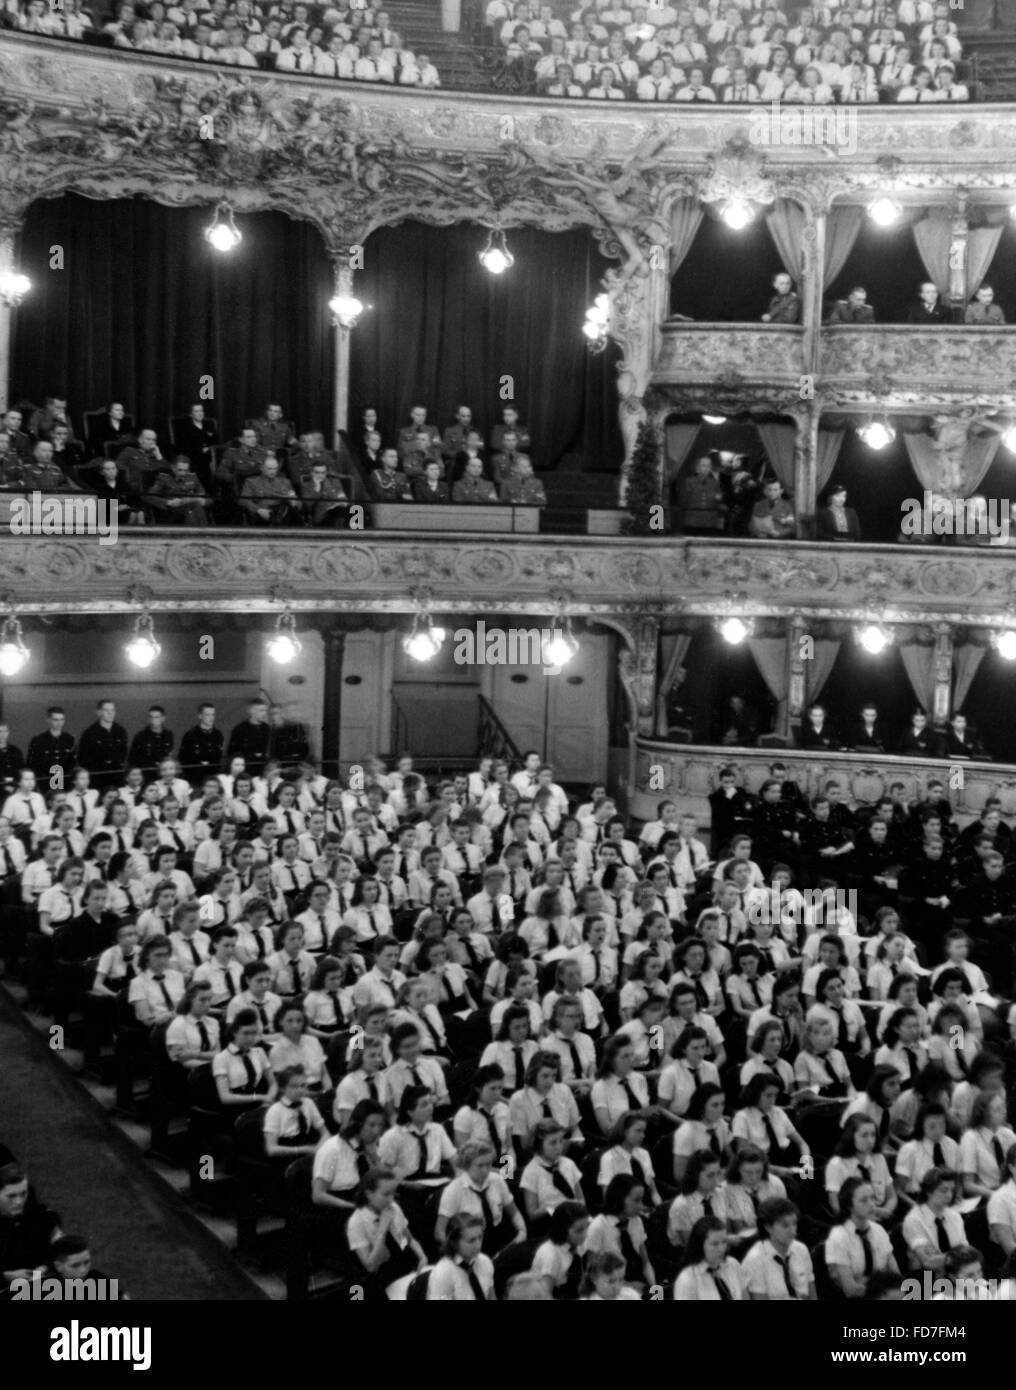 Verpflichtung der Jugend (Verpflichtung der Jugend) Zeremonie am Volkstheater in Berlin, 1943 Stockfoto